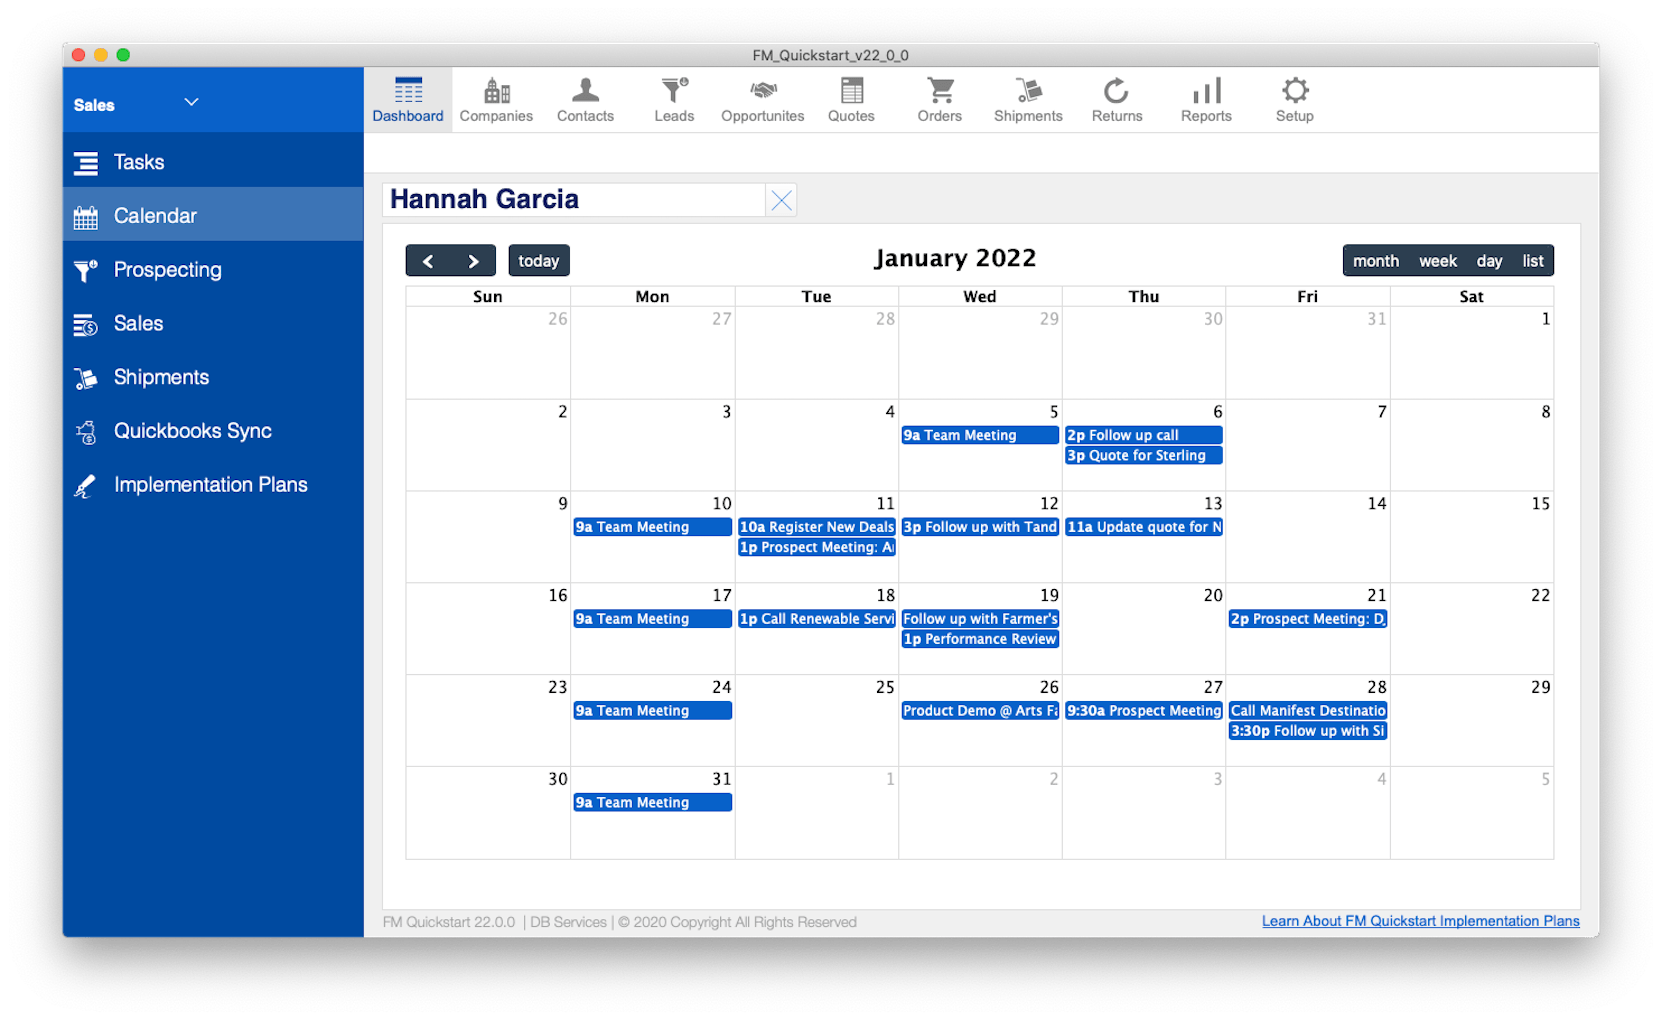 FM Quickstart calendar screenshot